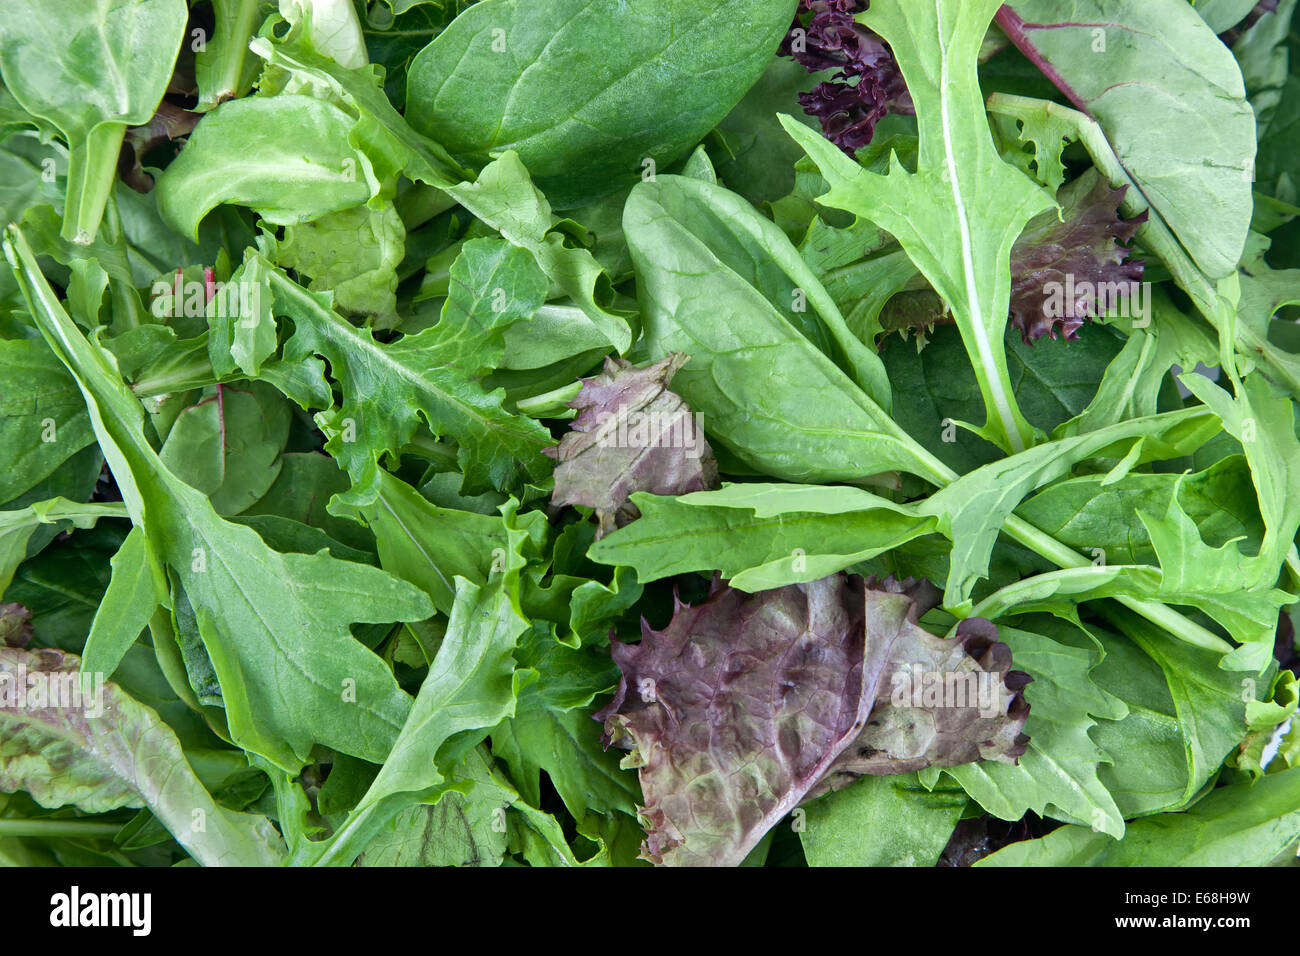 Laitue bio 'baby' 'Spring' mélange de salades. Banque D'Images